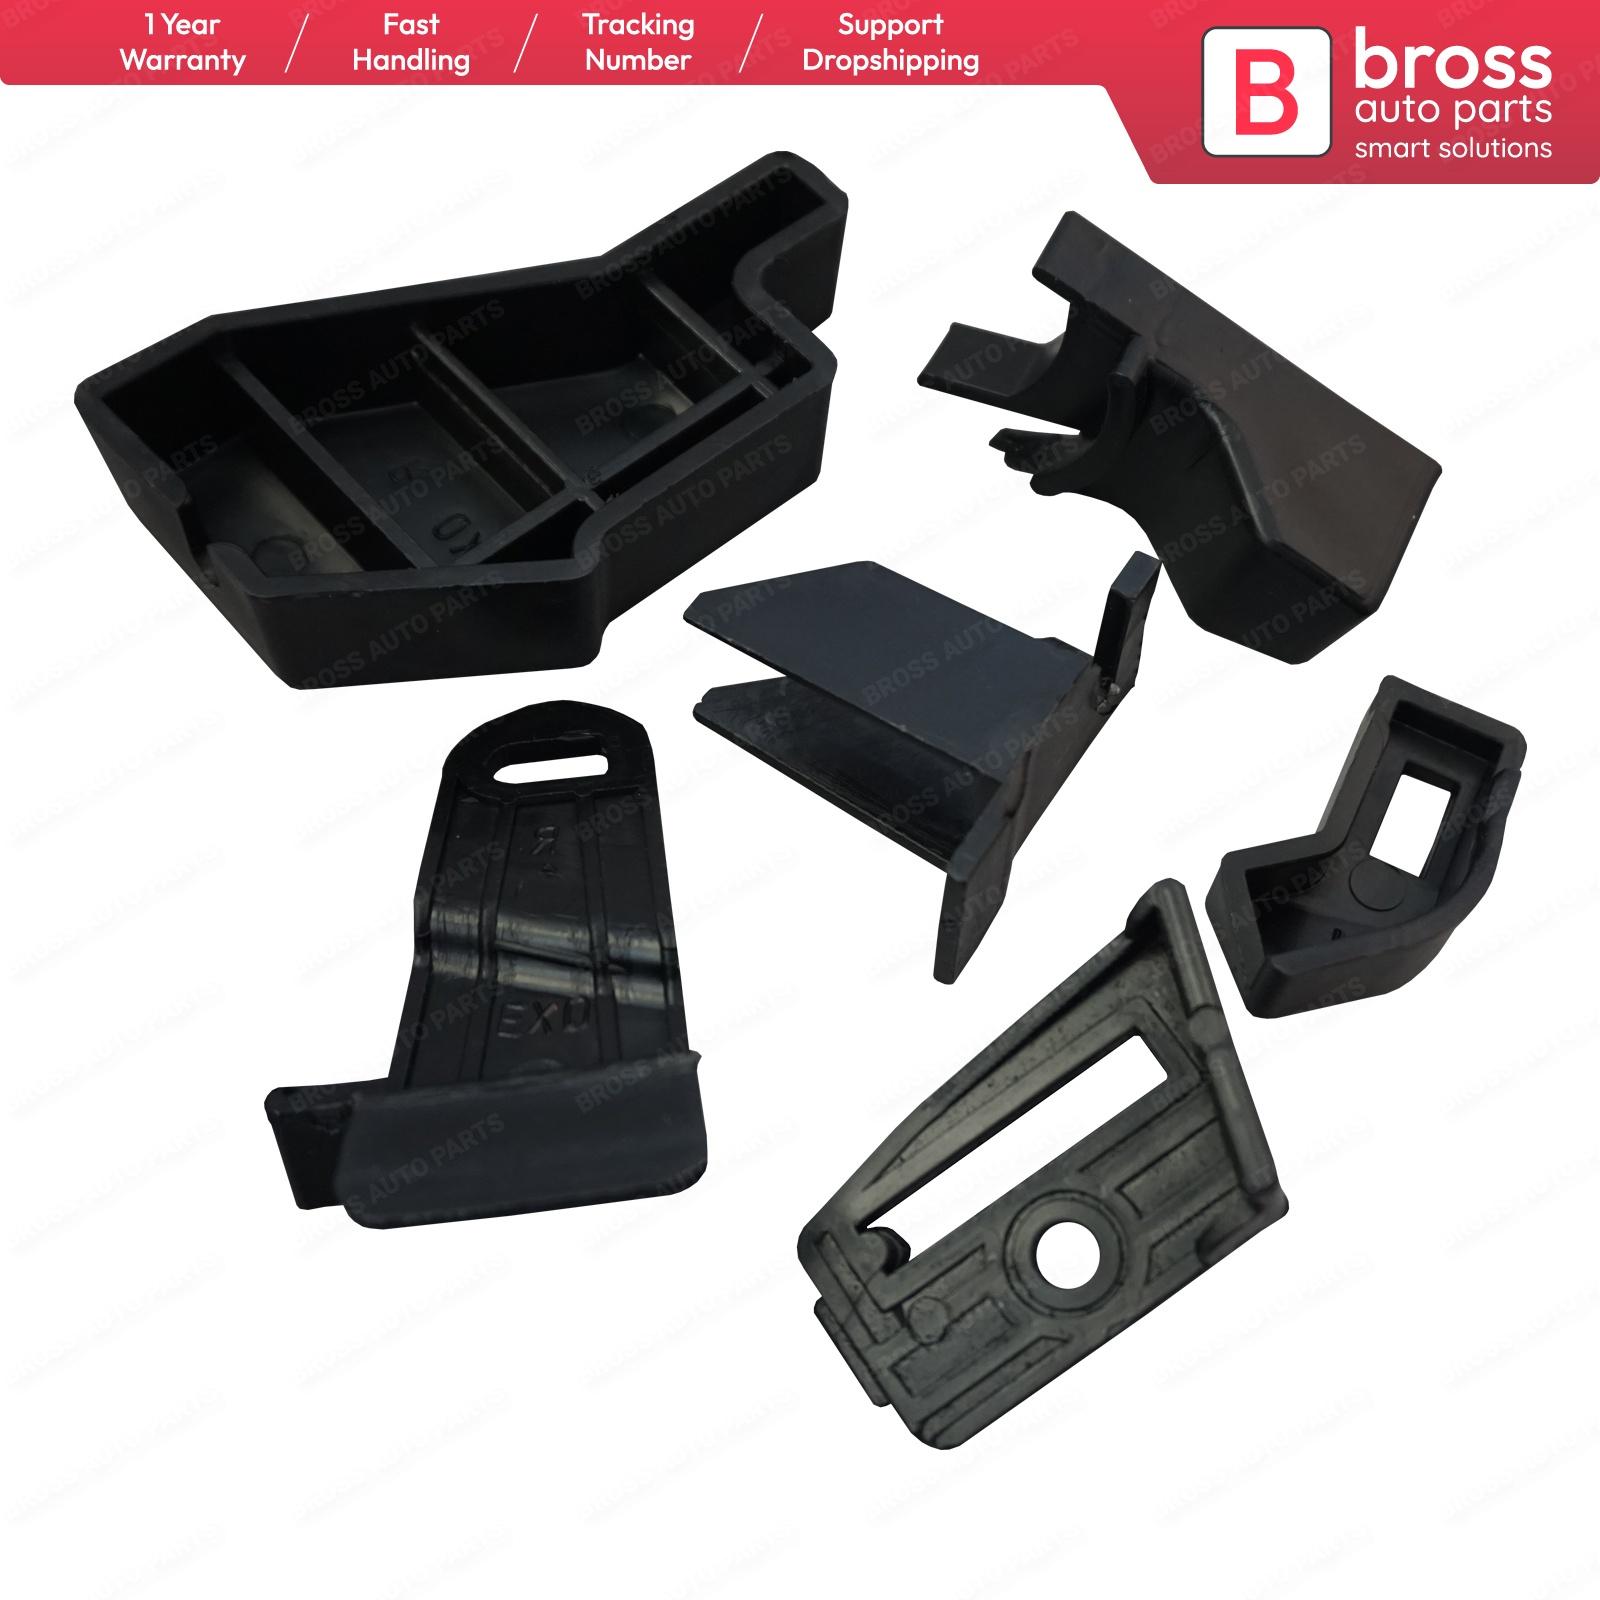 Изображение товара: Комплект для ремонта корпуса фары, правой стороны, Bross Auto Parts BHL525 для Nissan Qashqai 2013-2017, доставка из Турции